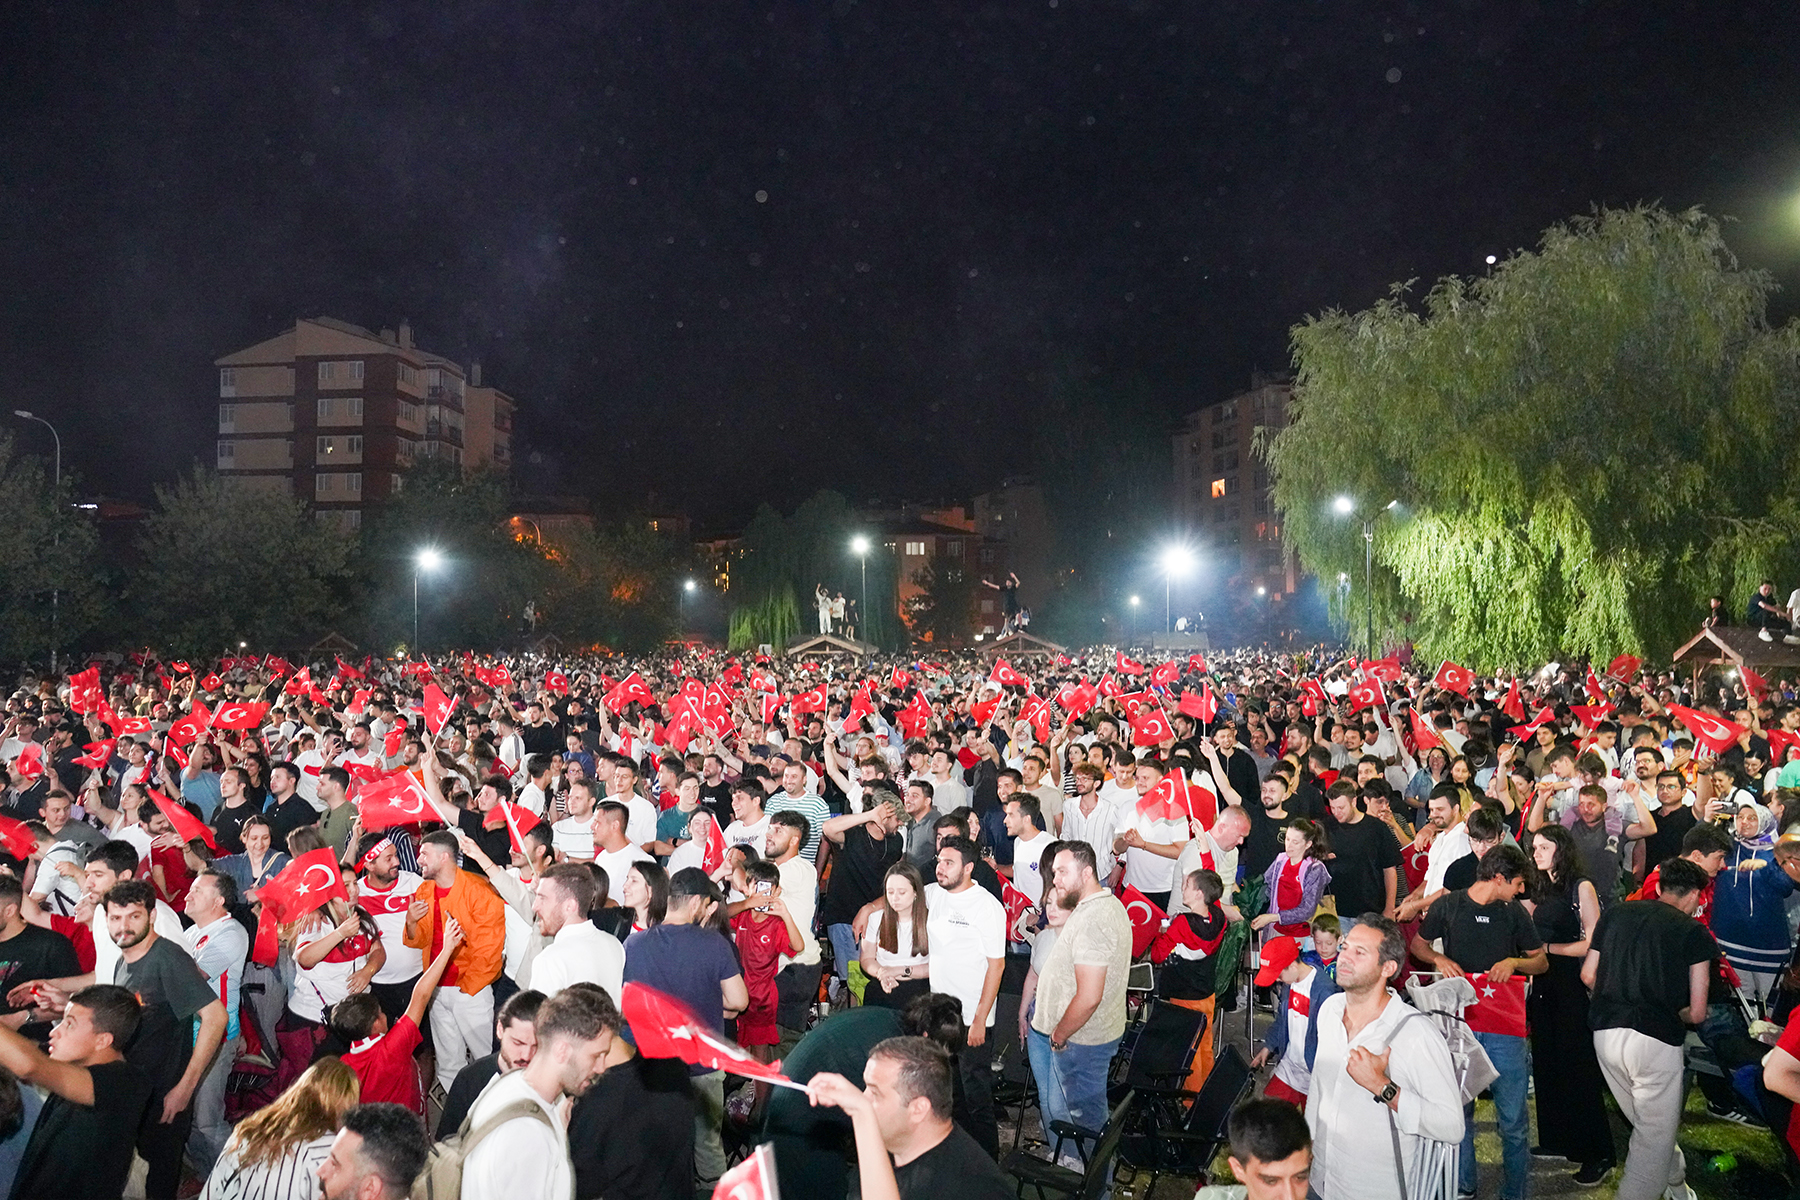 Tepebaşı Belediyesi tarafından ETİ Caddesi kum sahada kurulan ekran ile Eskişehirliler milli maç gecesinde bir araya geldi.